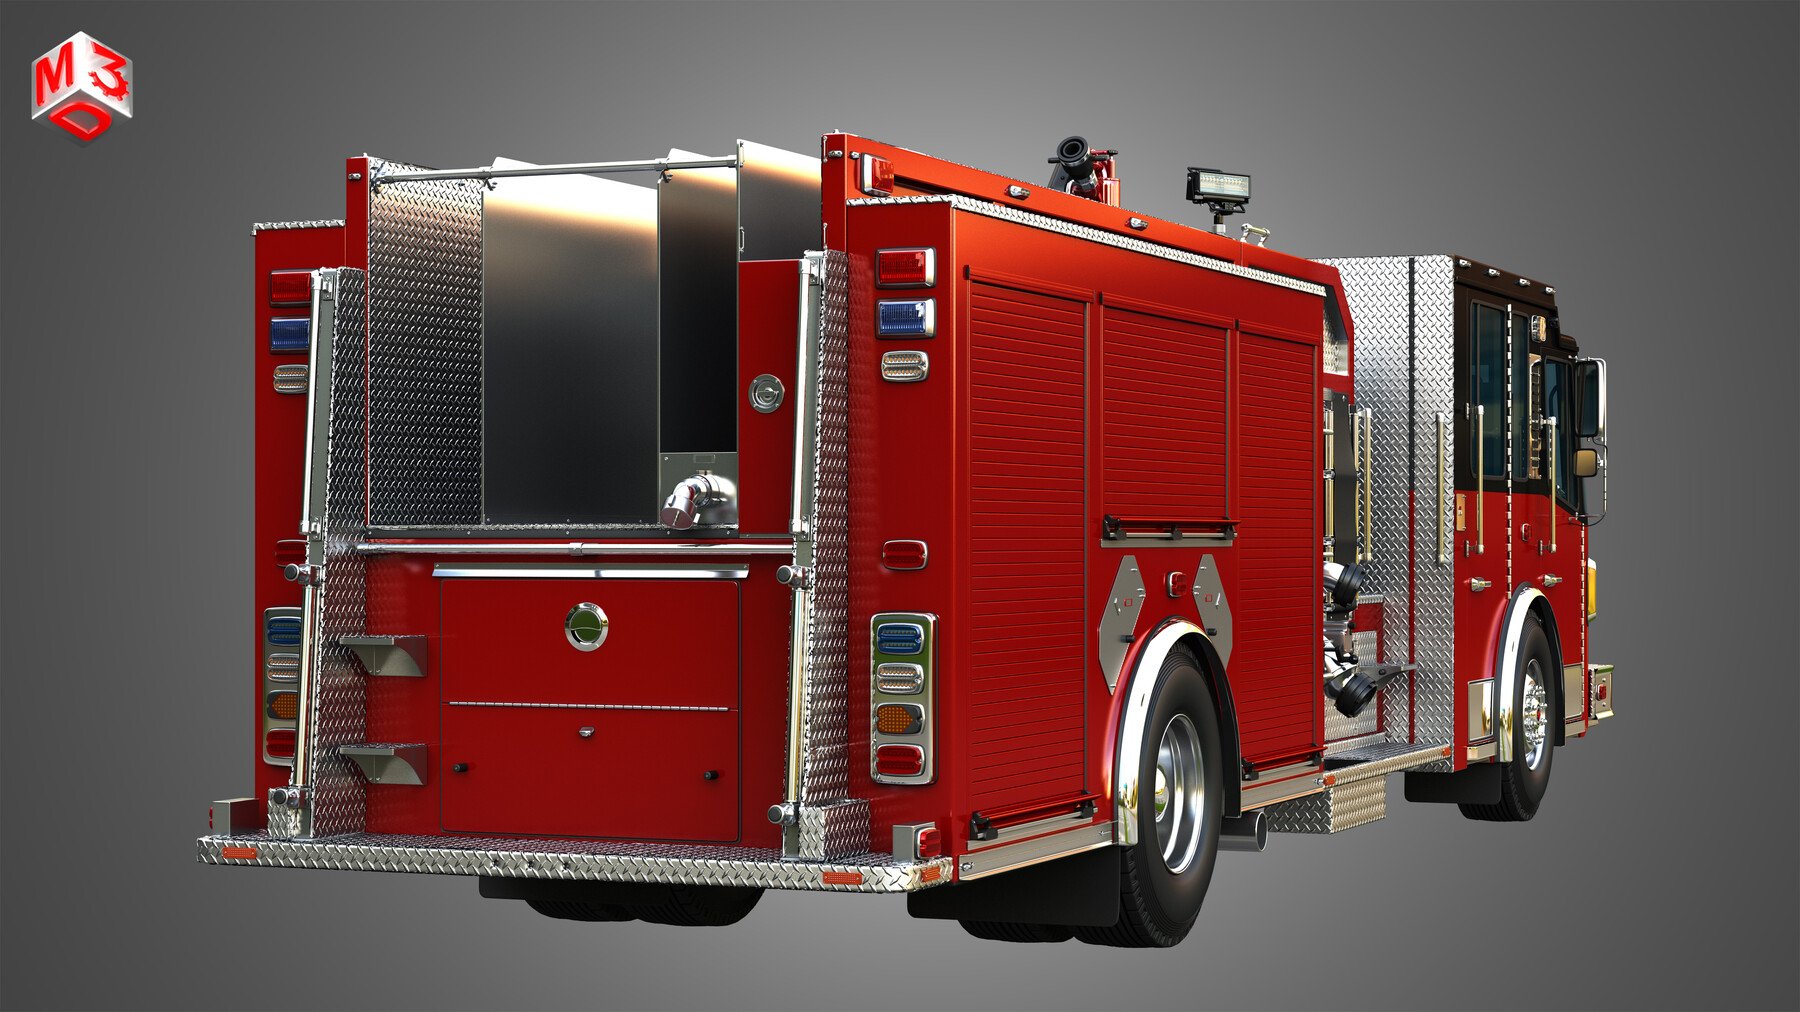 АСМ пожарный автомобиль. АРС пожарный автомобиль. Пожарный автомобиль вид сверху. Аса пожарный автомобиль.